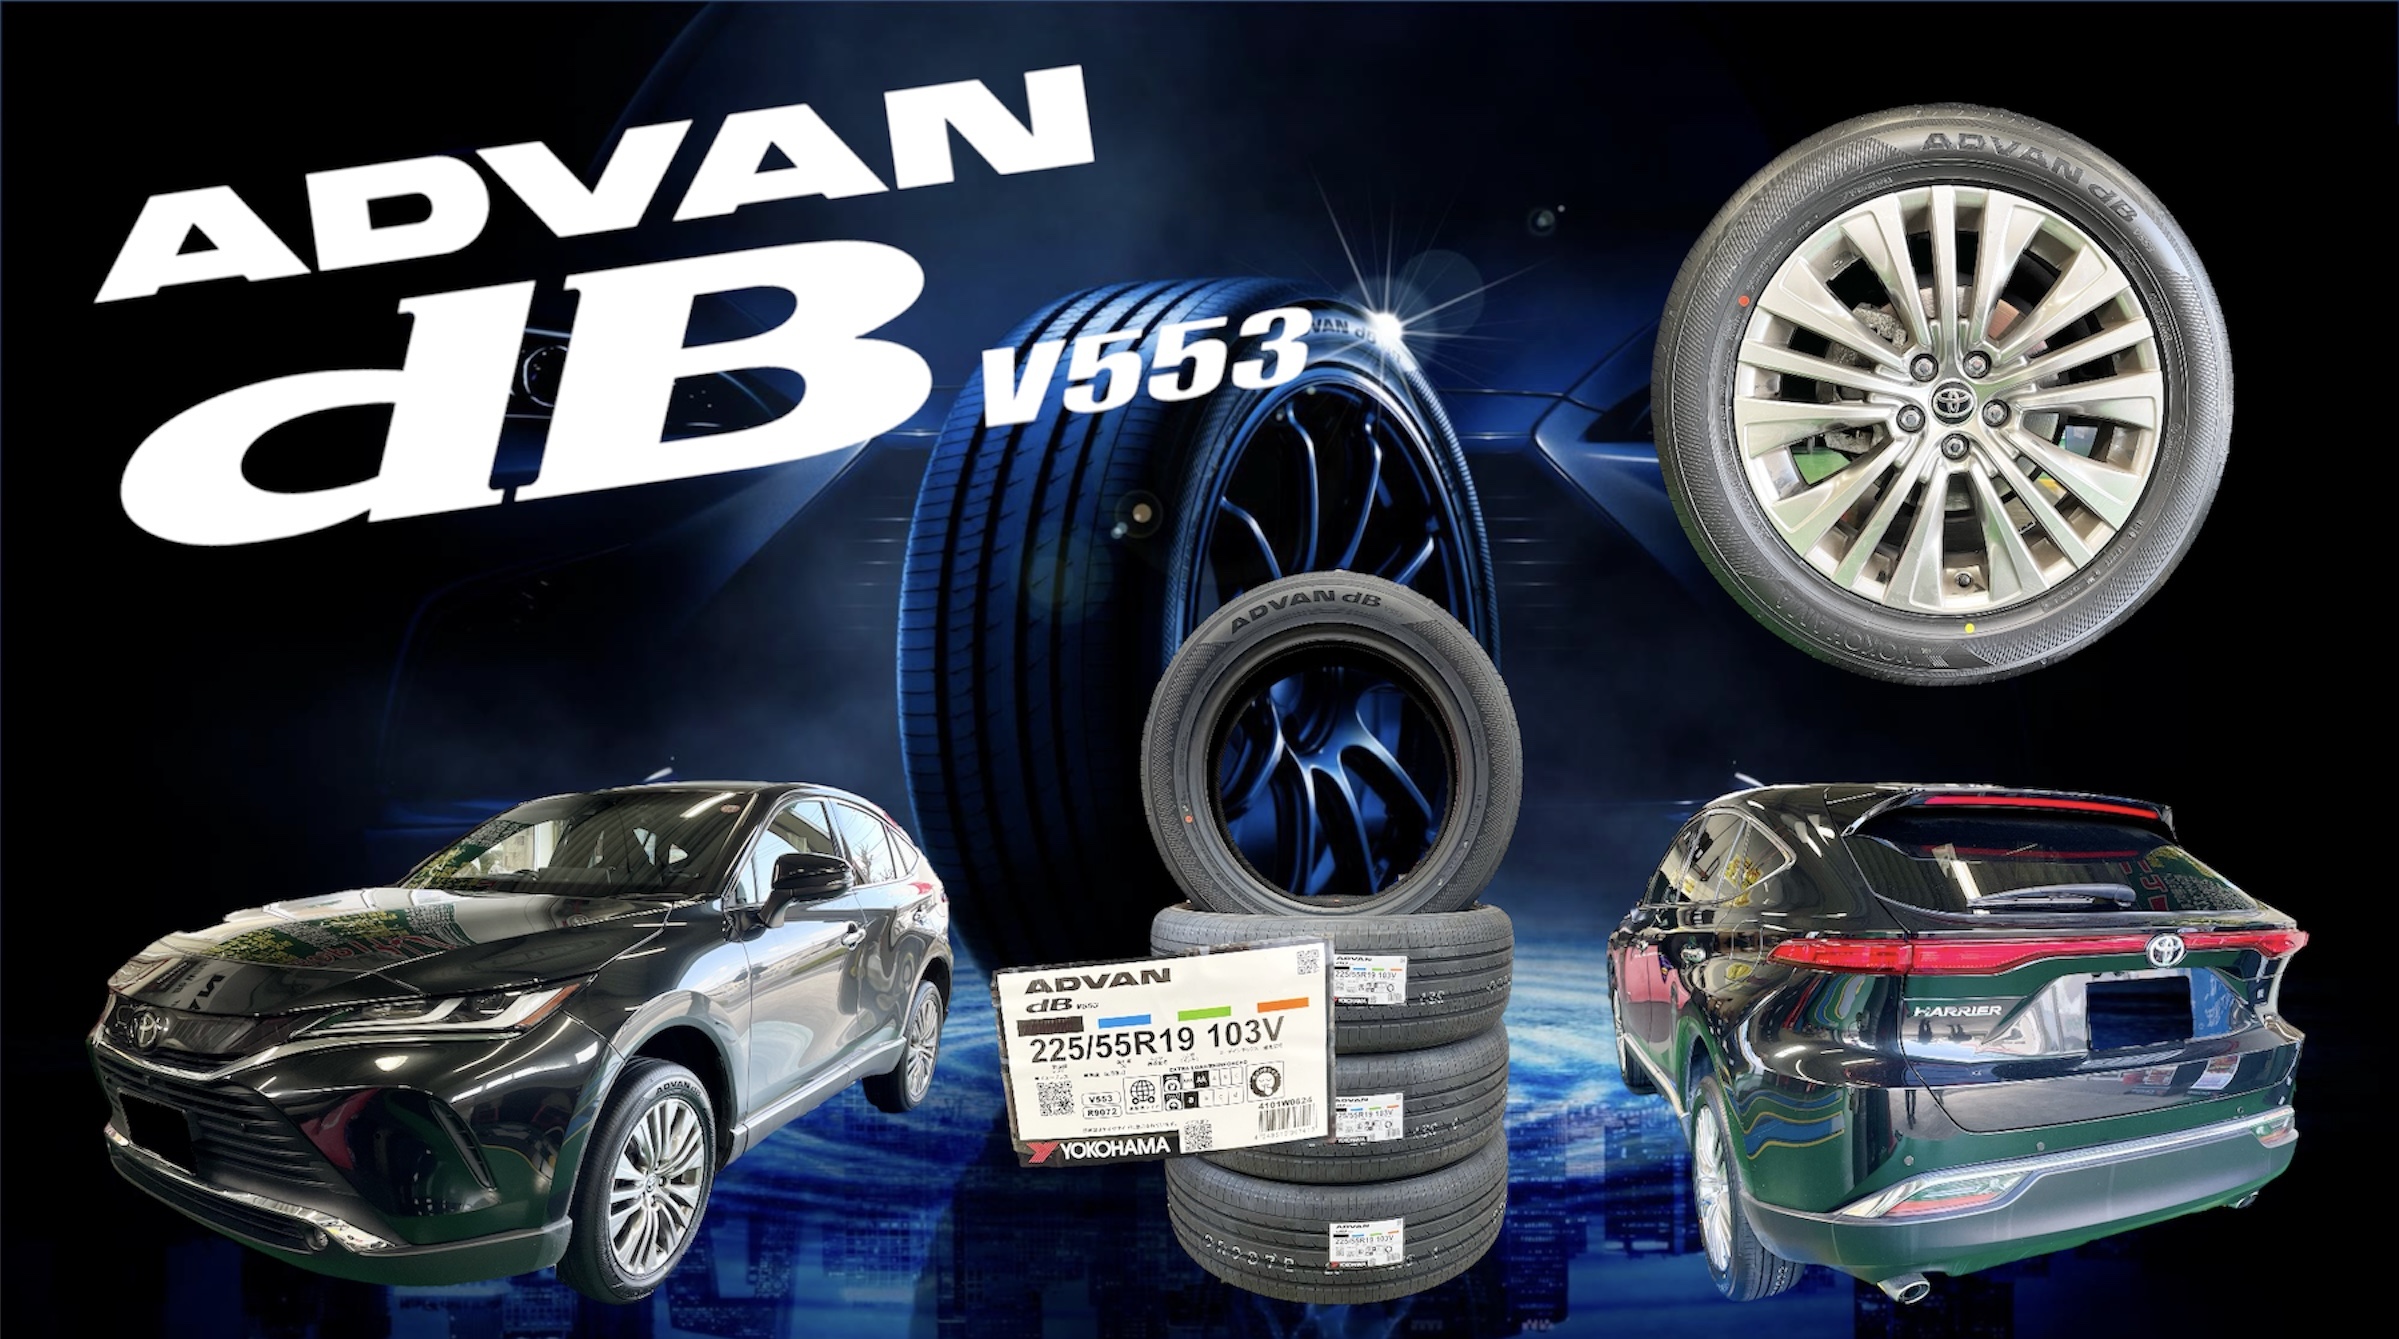 新商品の ADVAN dB V553 がオススメです！